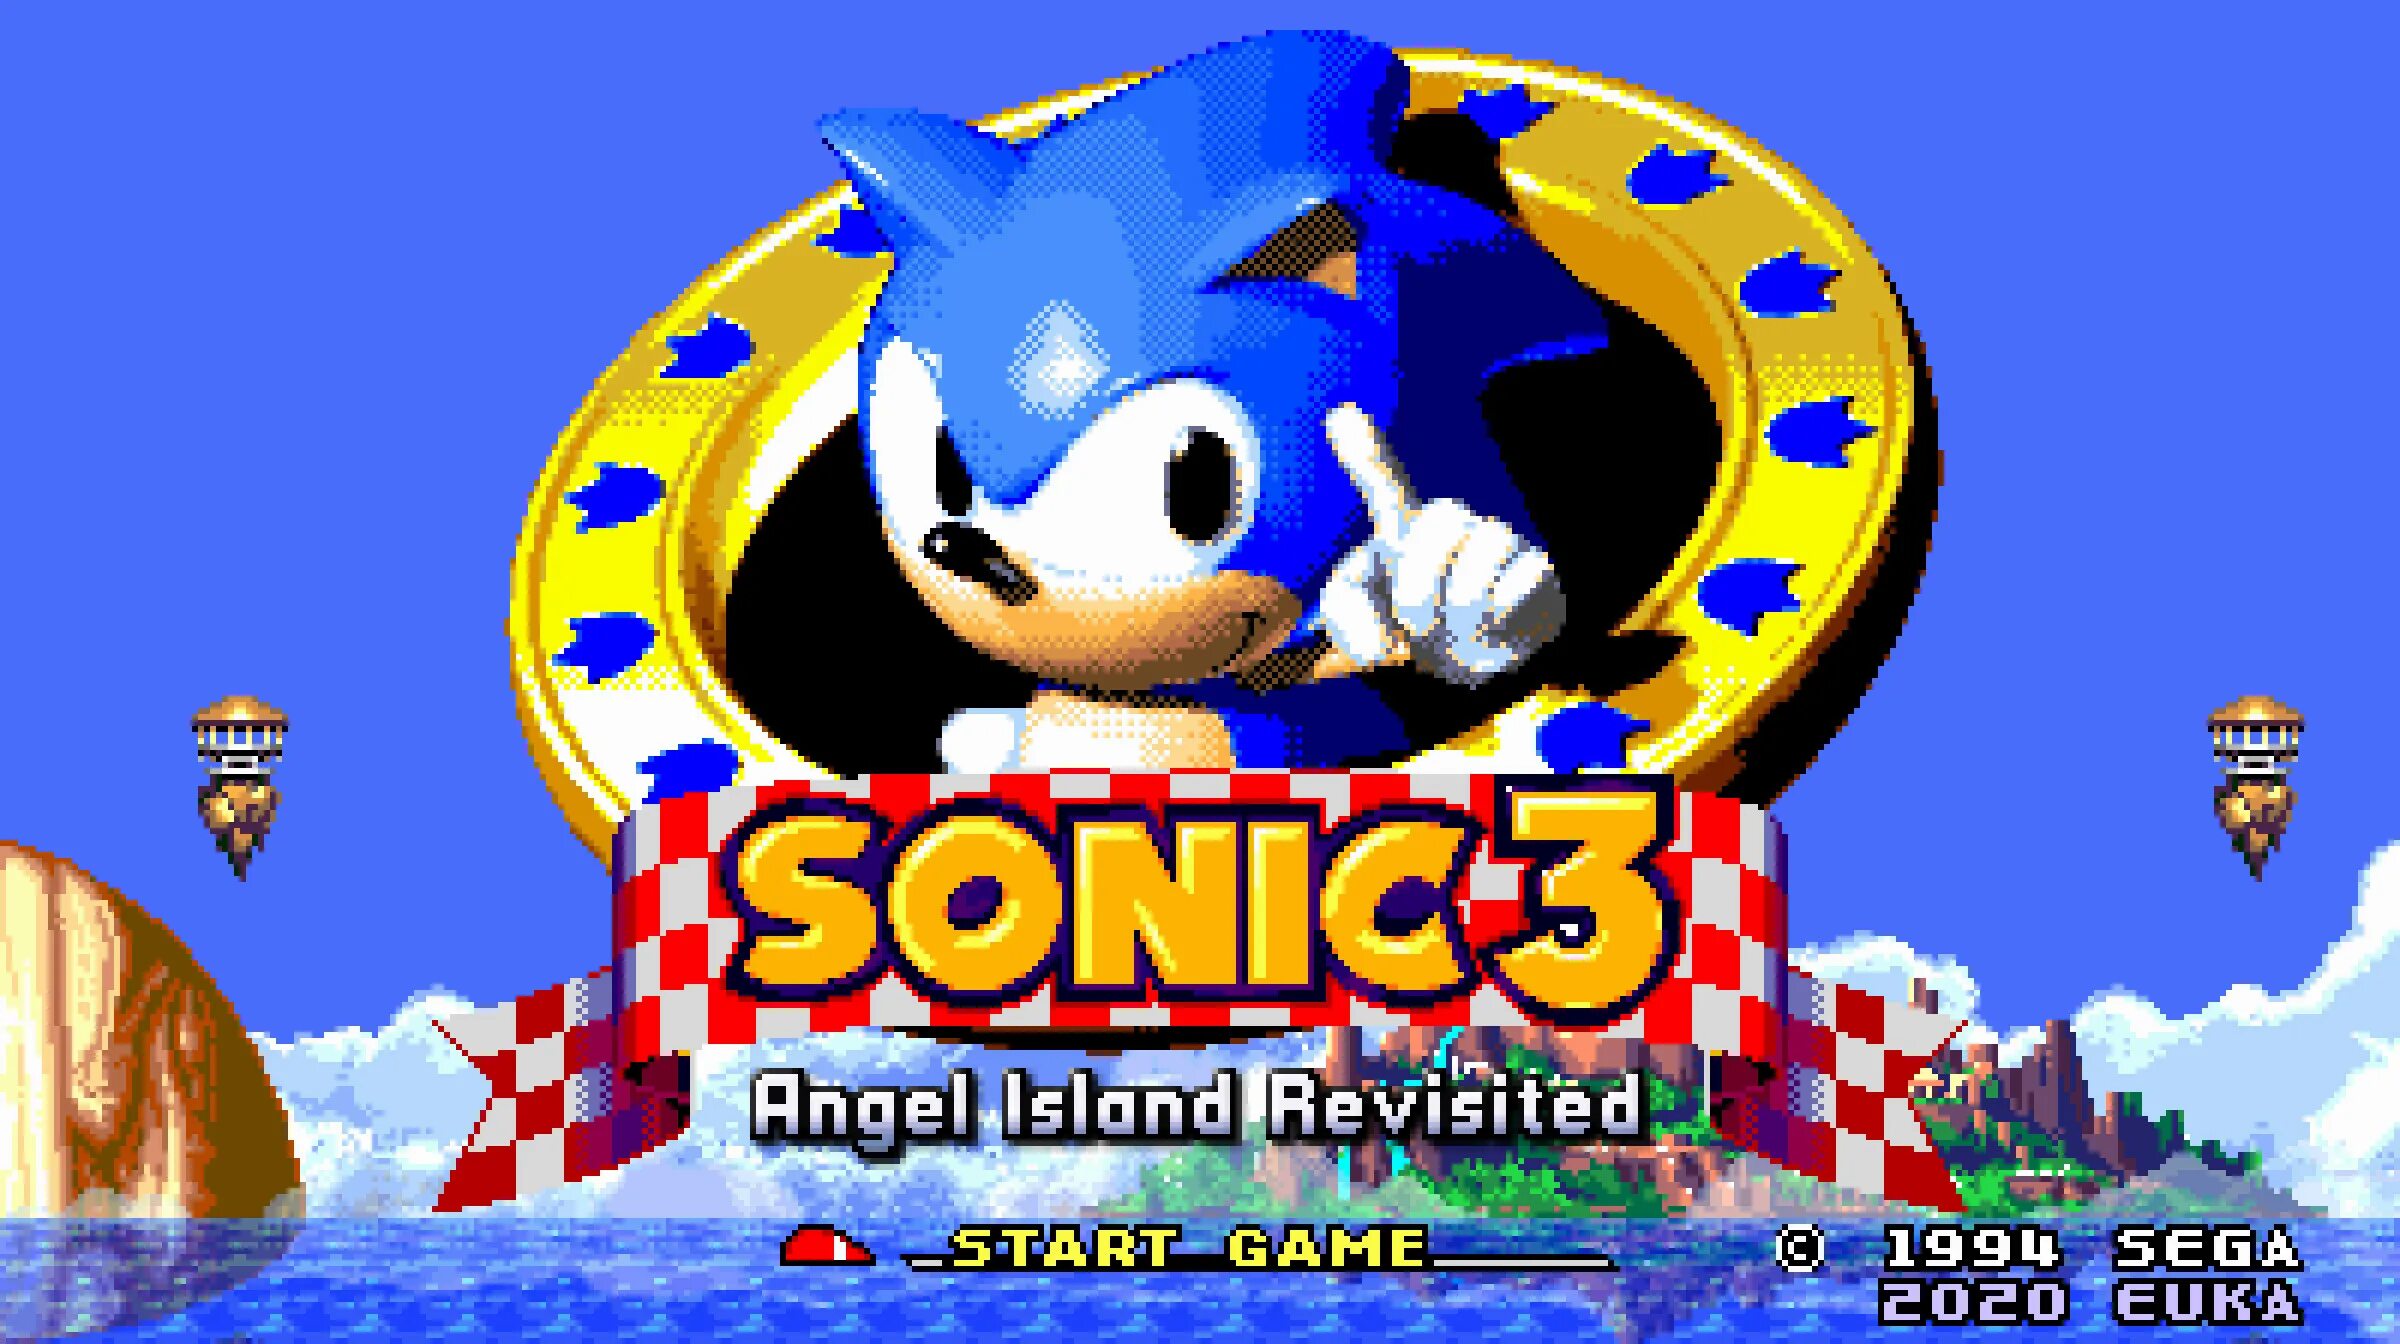 ROM Соник 3 АИР. Sonic 3 a.i.r. Соник 3 остров ангелов. Энджел Айленд Соник 3. Sonic 3 mobile